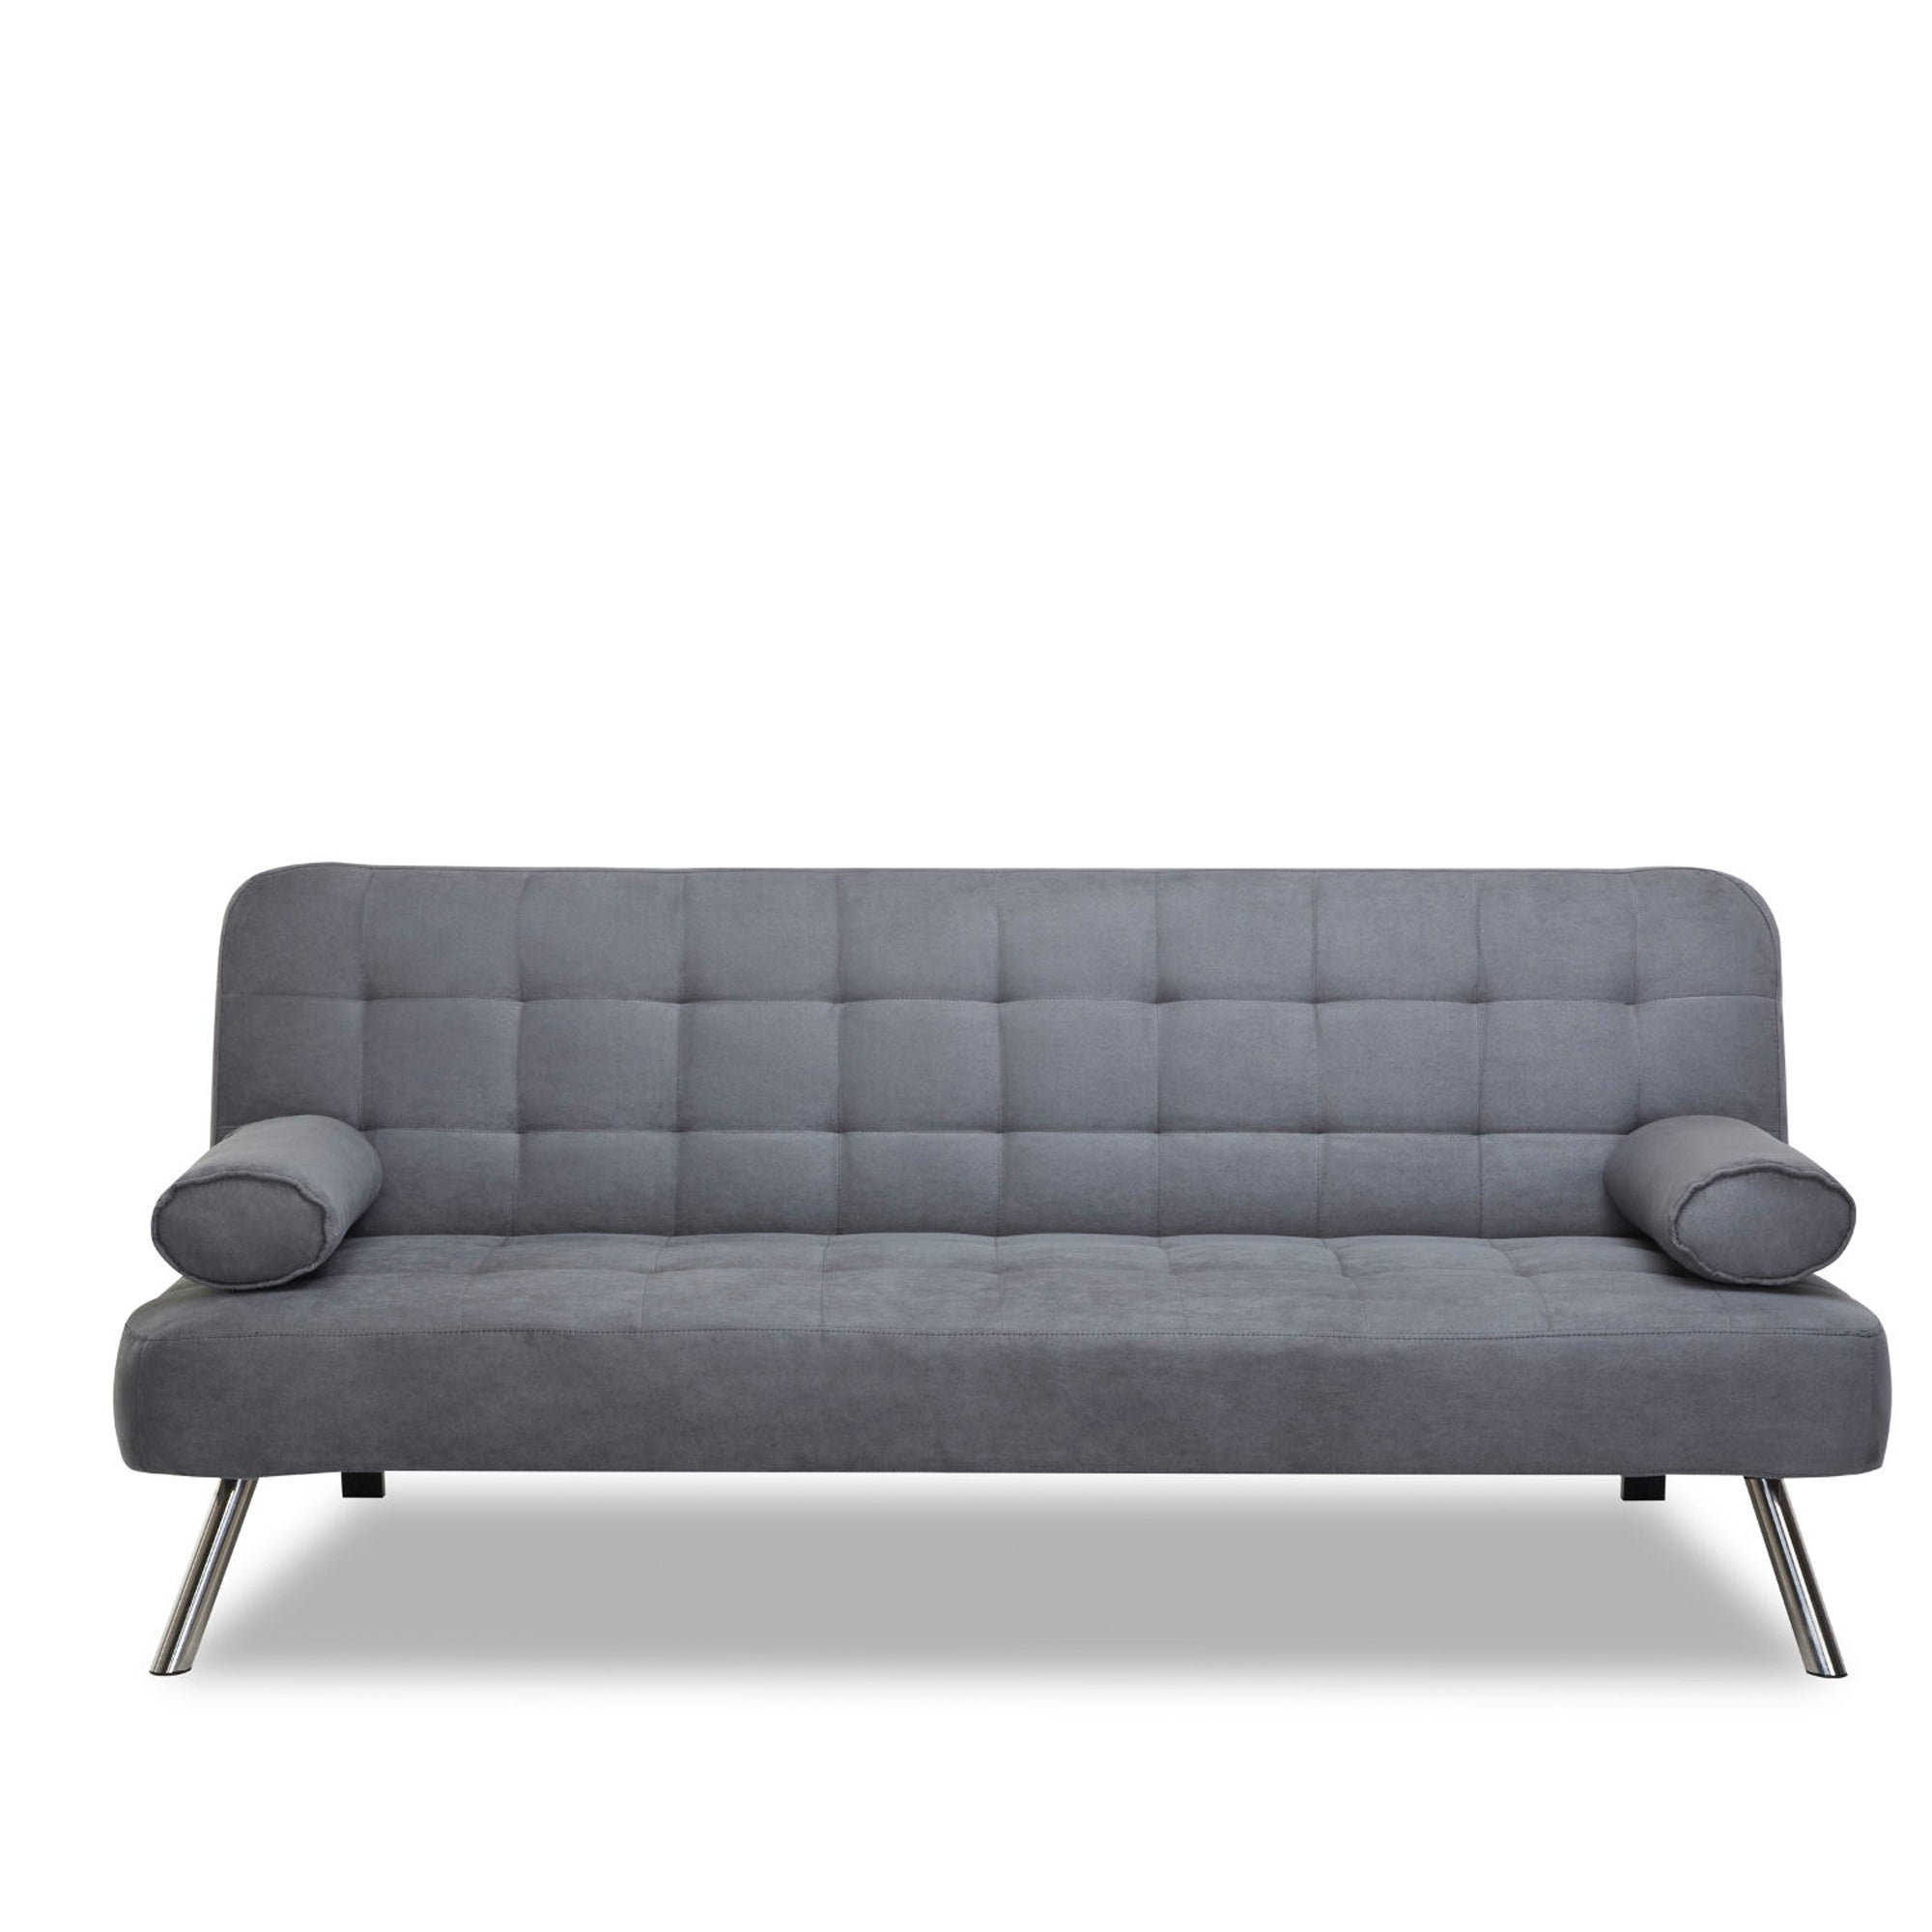 Tobi Fabric Sofa Bed | Dunelm